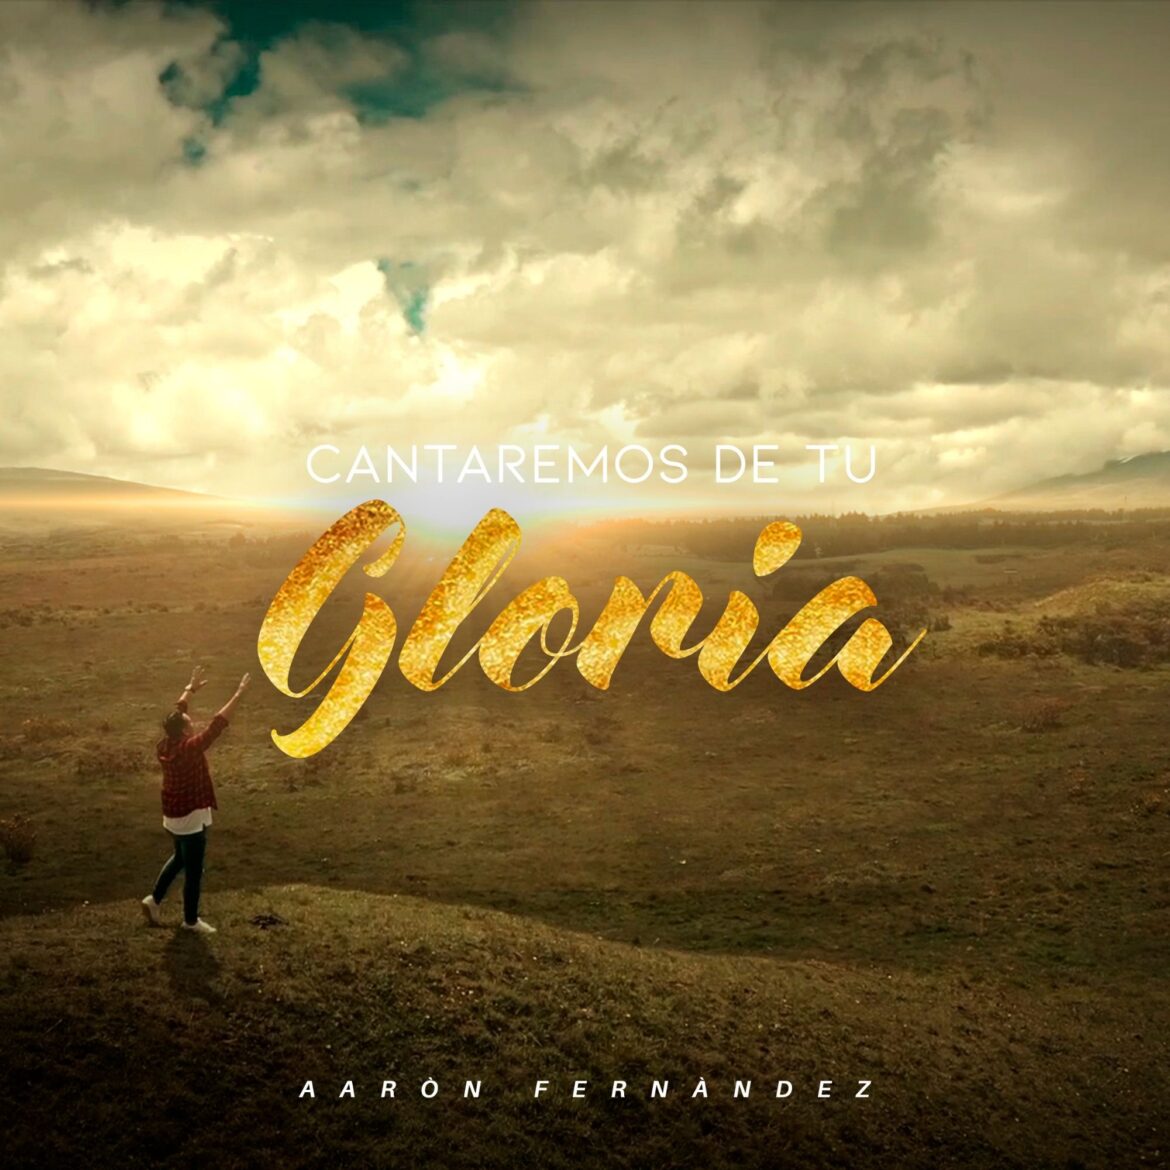 “Cantaremos de tu Gloria” es el título del sencillo promocional del cantante Aarón Fernández